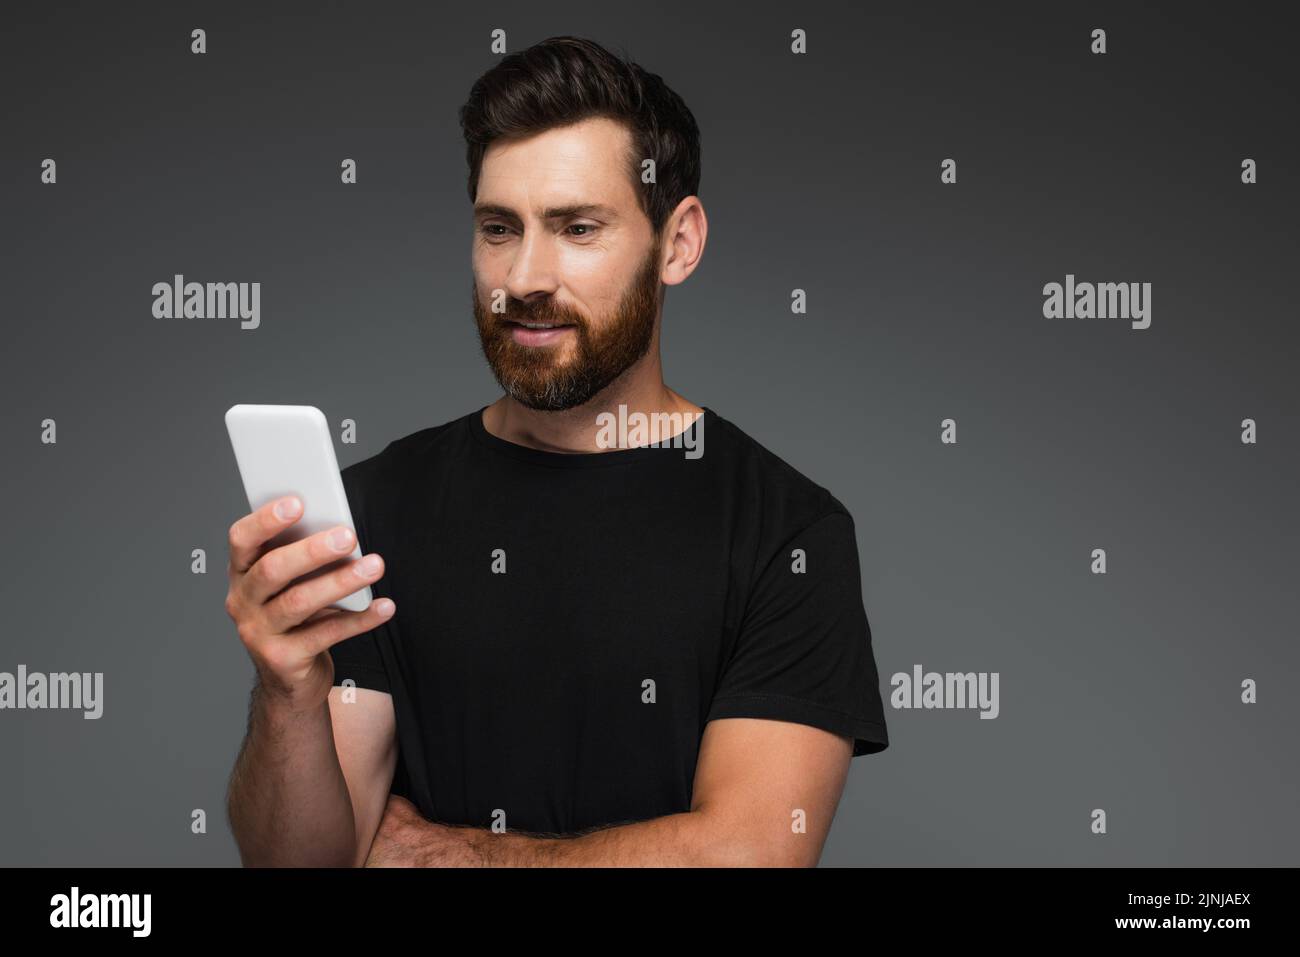 un hombre barbudo sonriente en una camiseta negra mirando un smartphone aislado sobre una imagen de stock gris Foto de stock